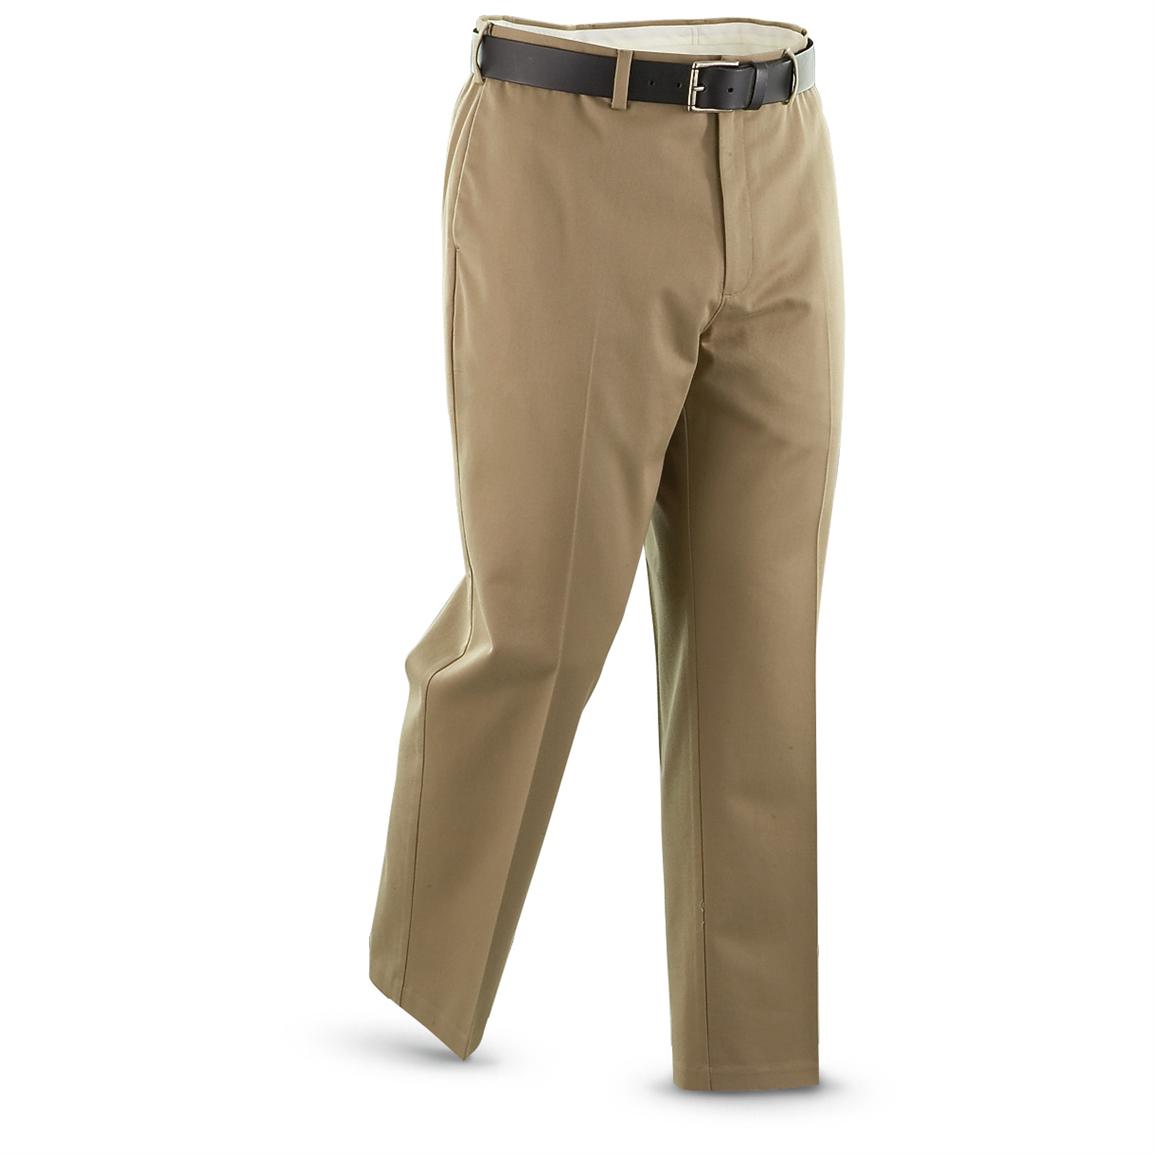 Guide Gear Men's Flat Front Pants - 221594, Jeans & Pants at Sportsman ...